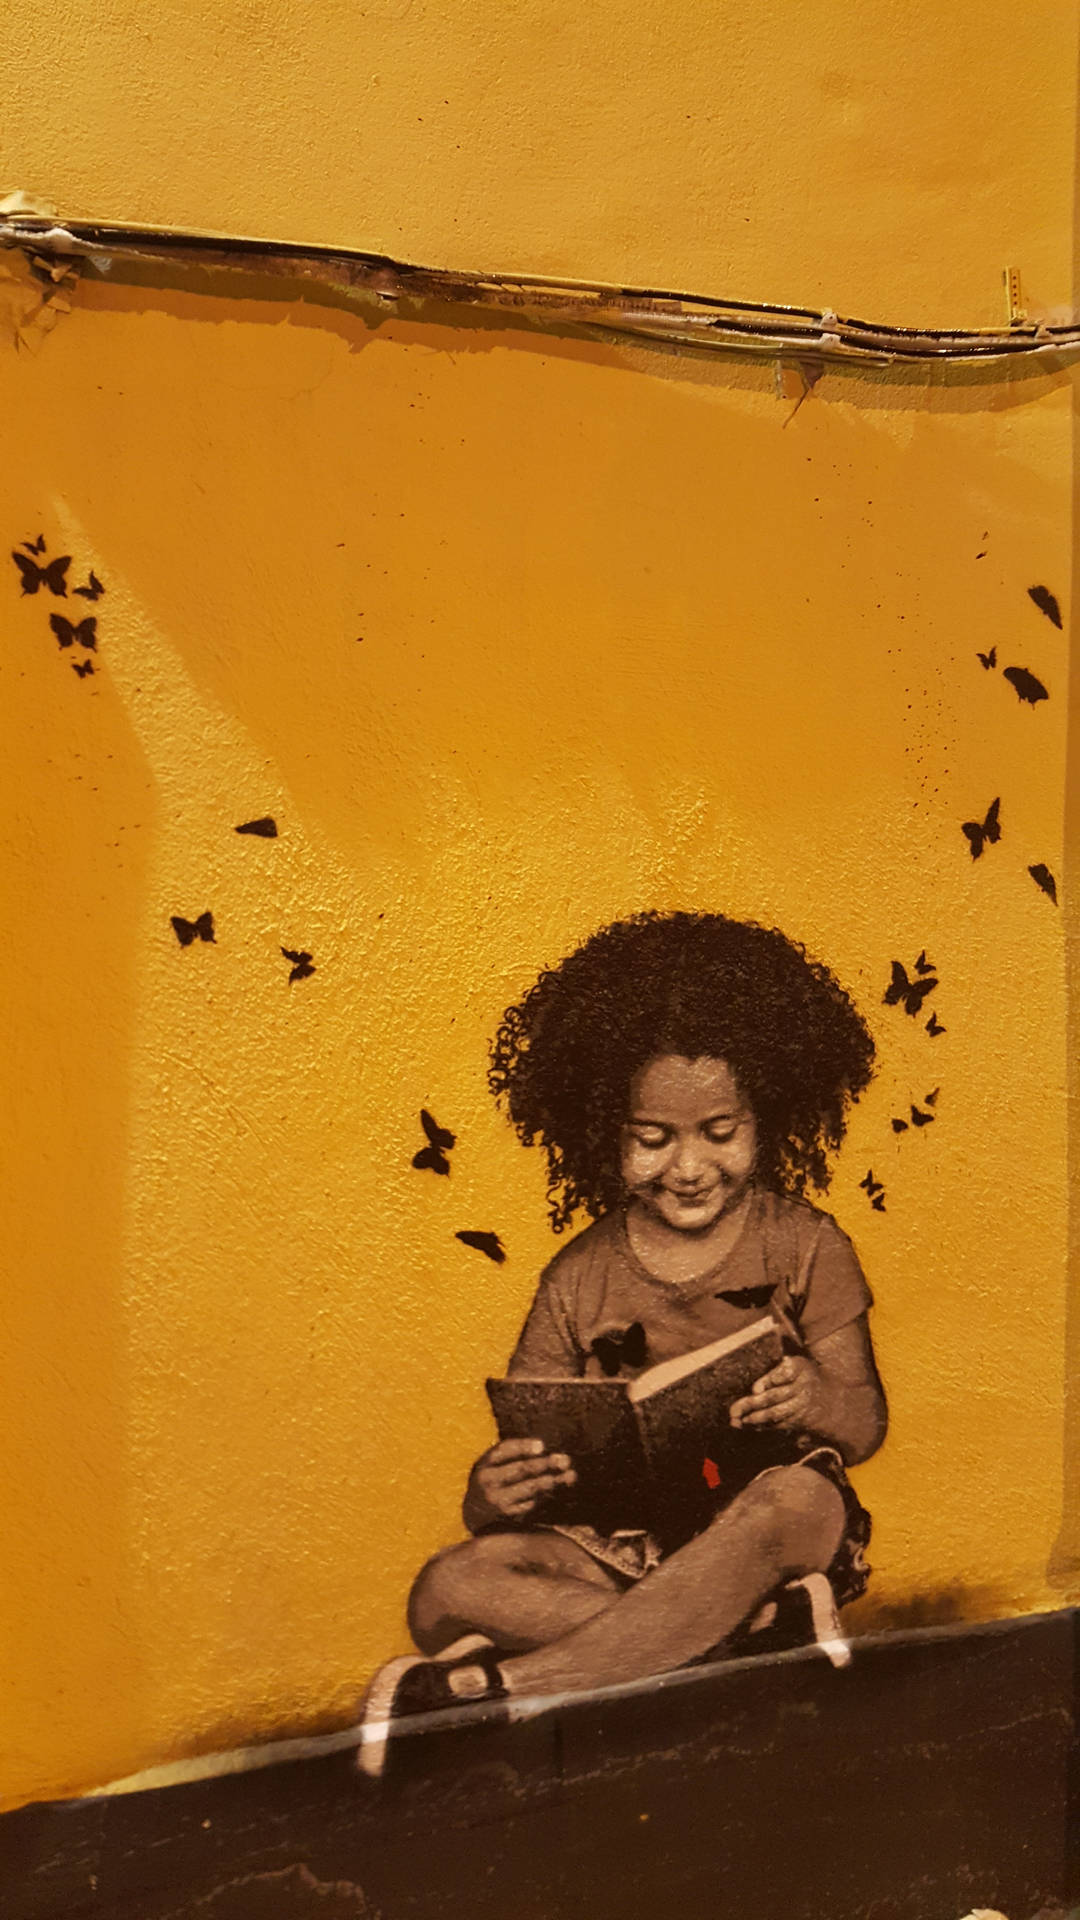 Graffiti wallpaper of little girl reading a book.